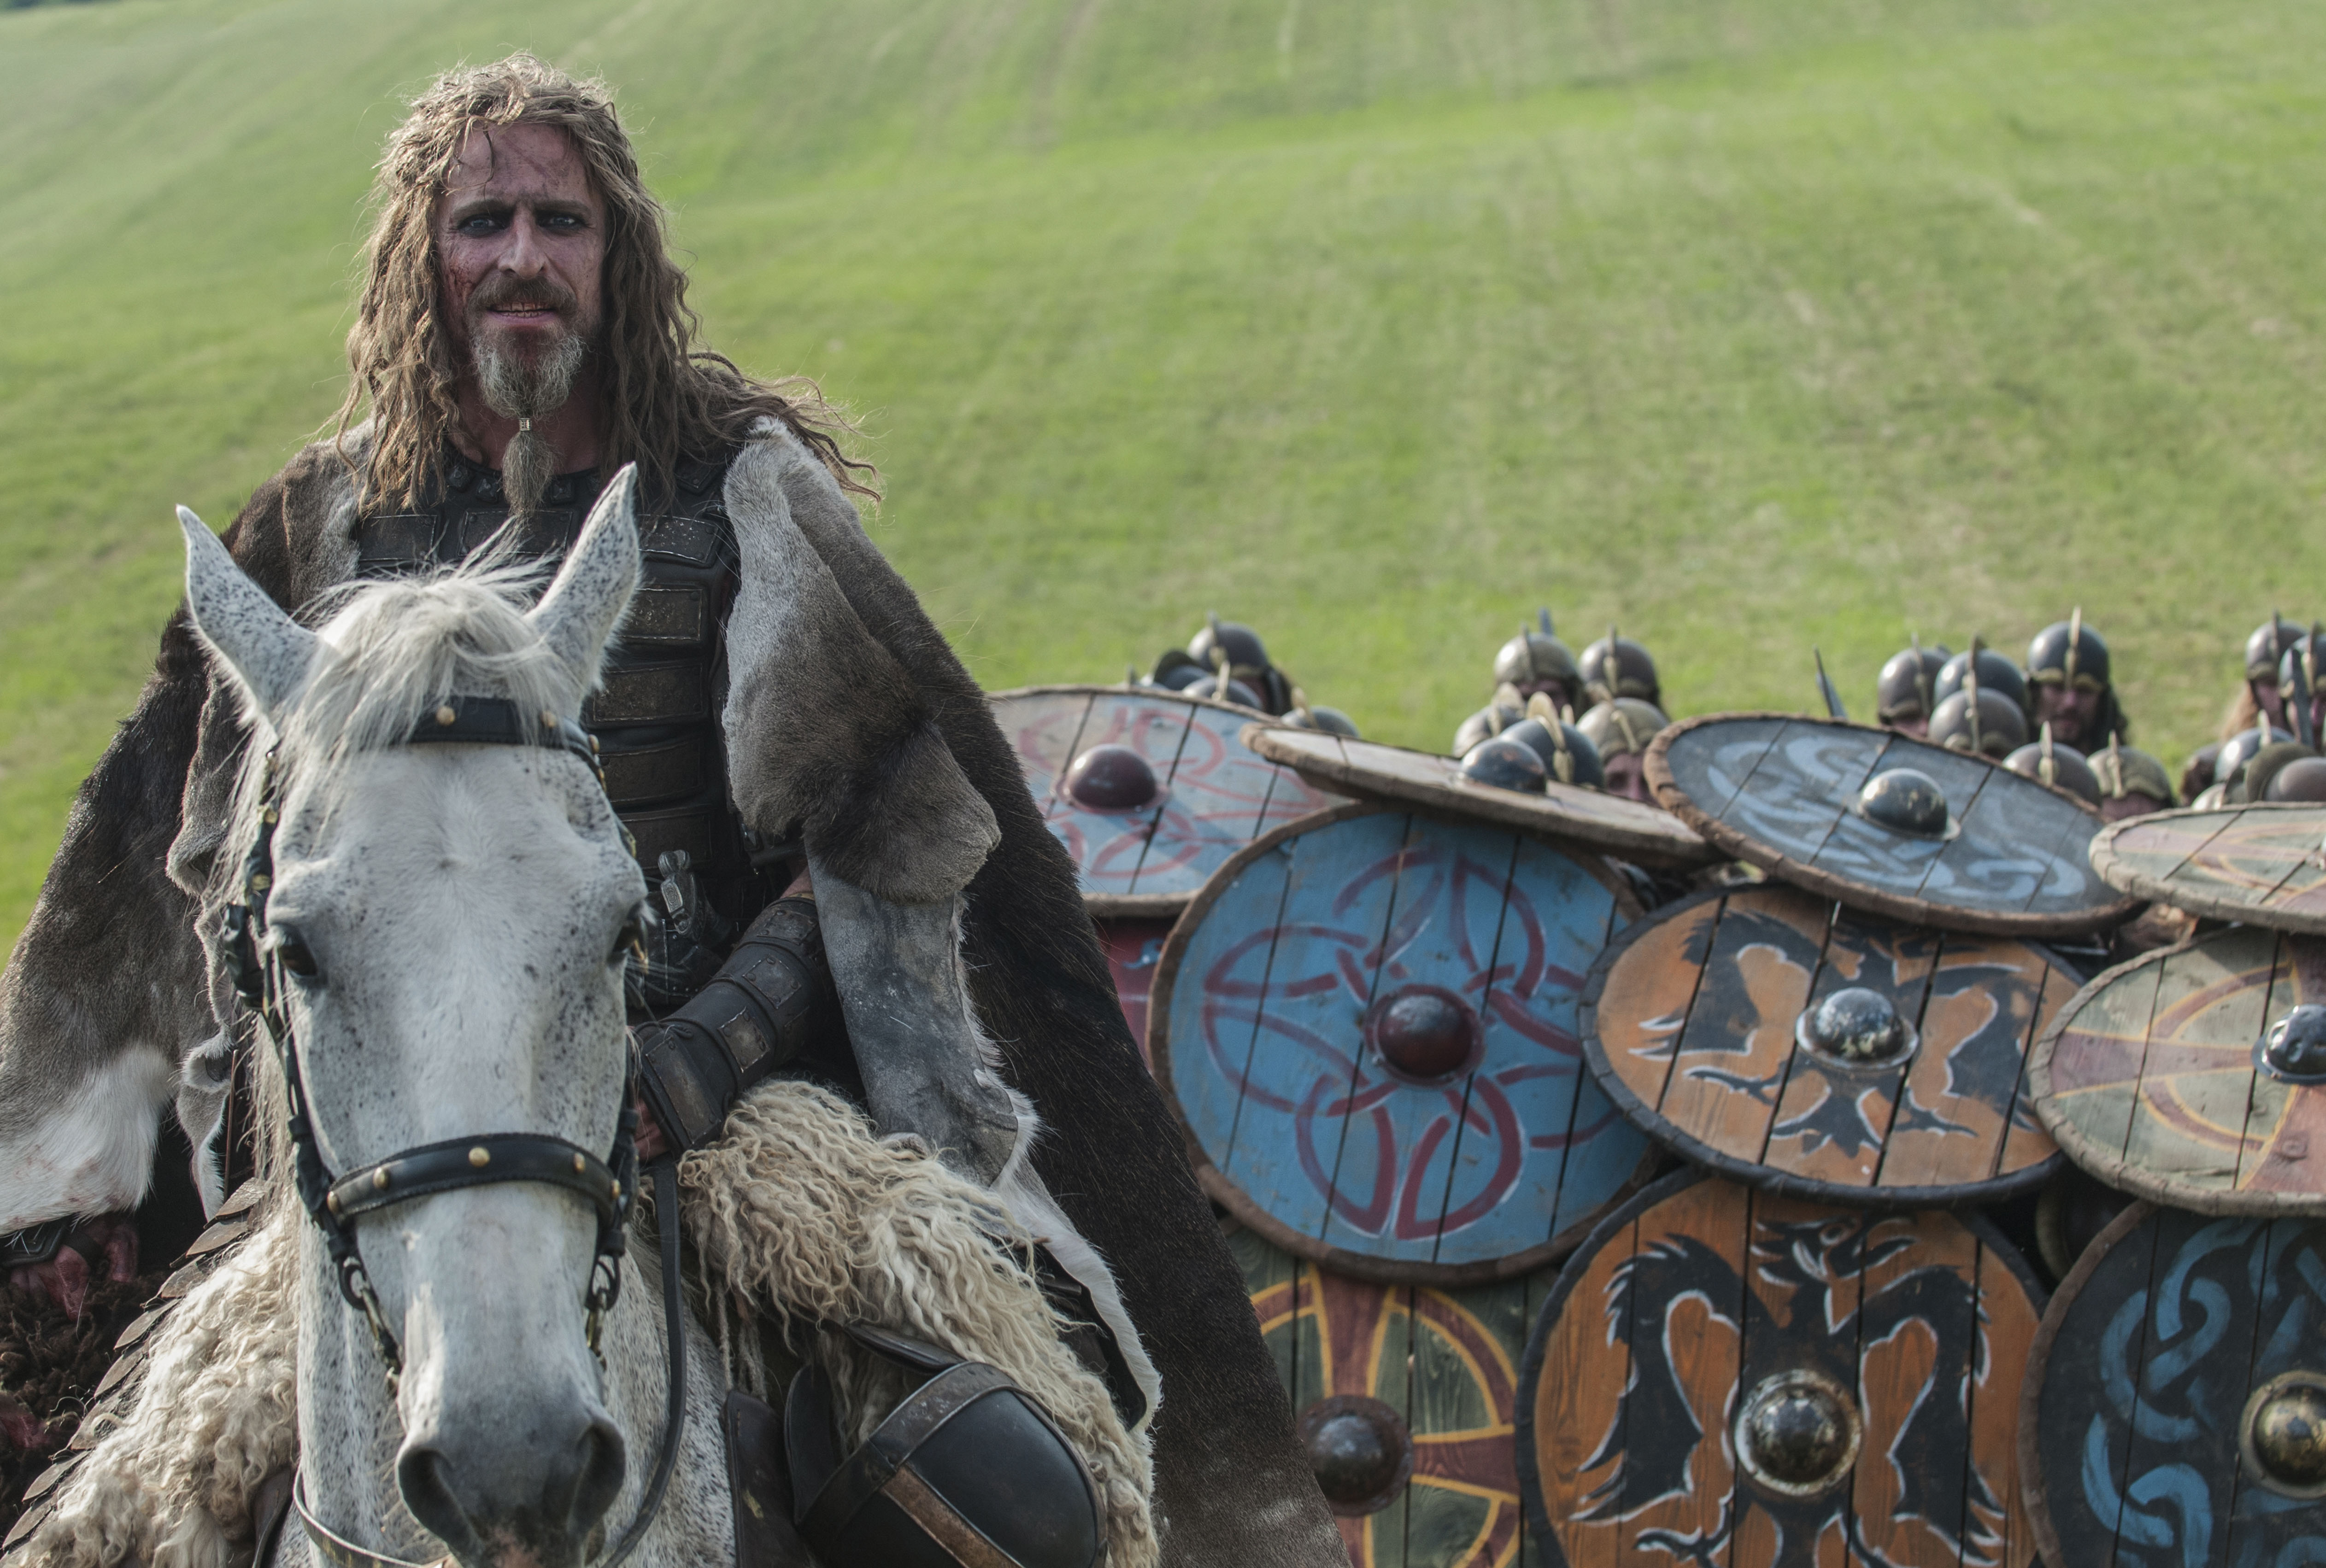 Ragnar, The Last Kingdom Wiki